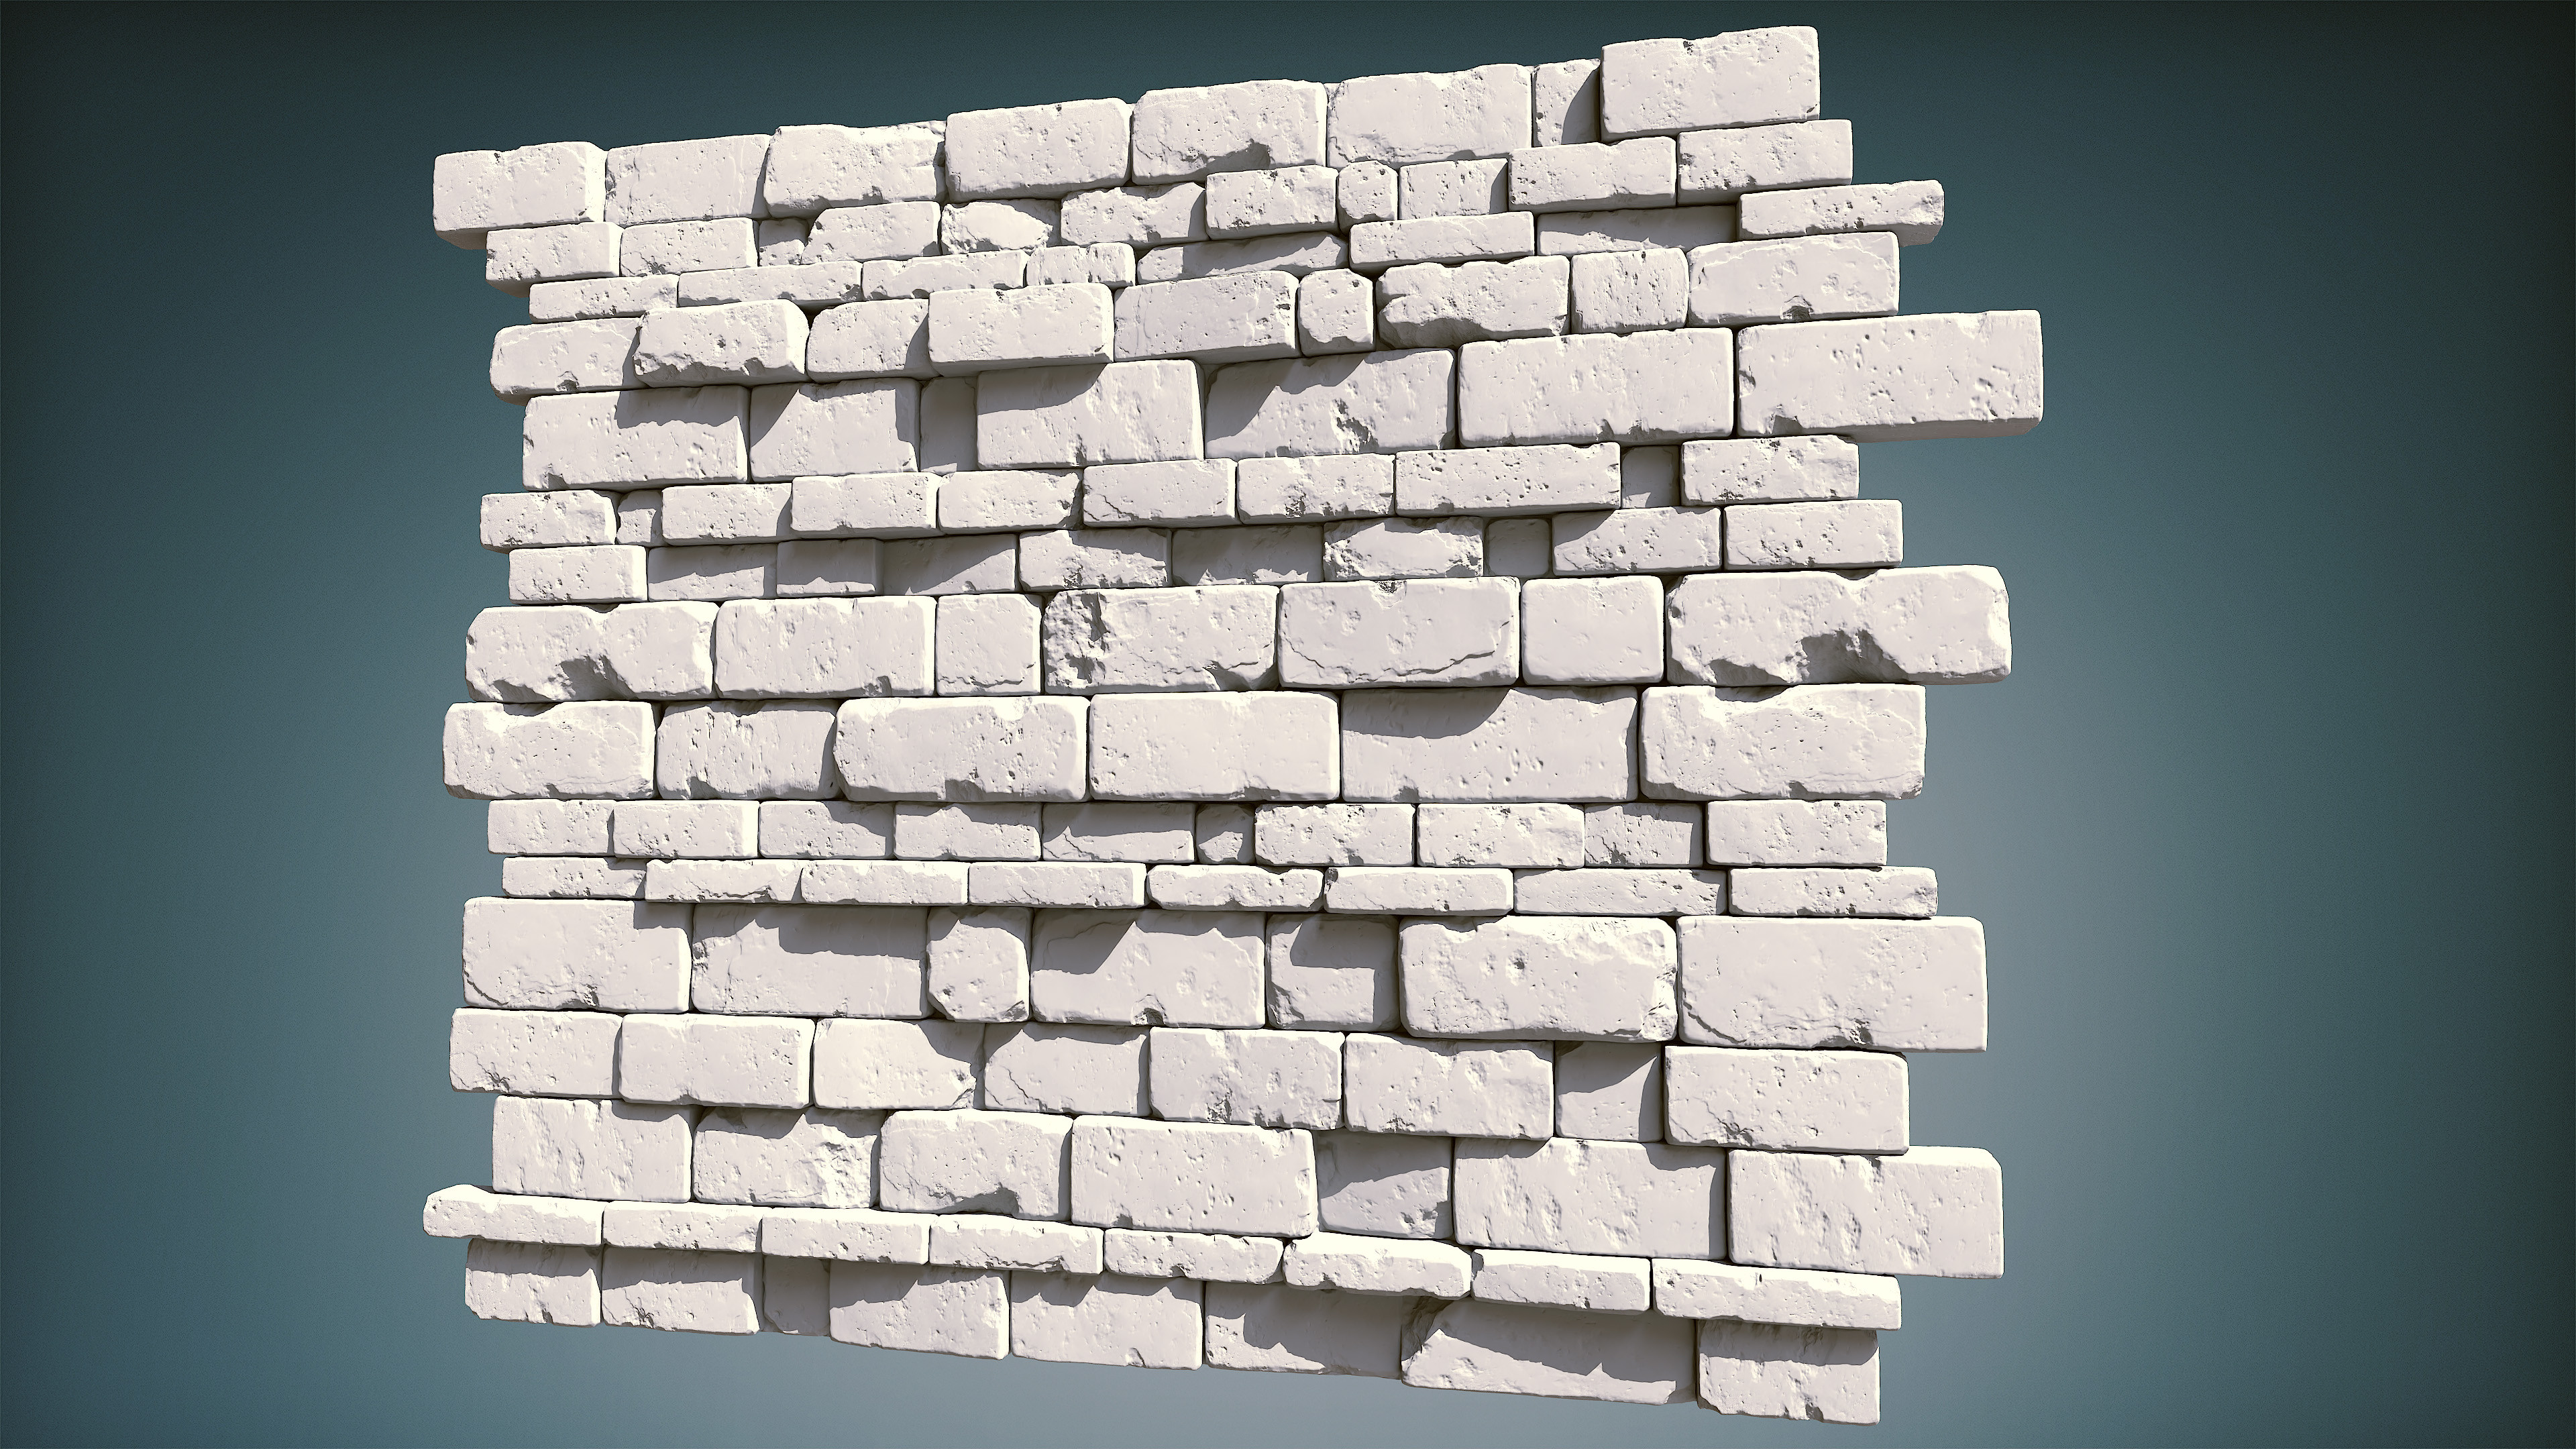 Bricks sculpt